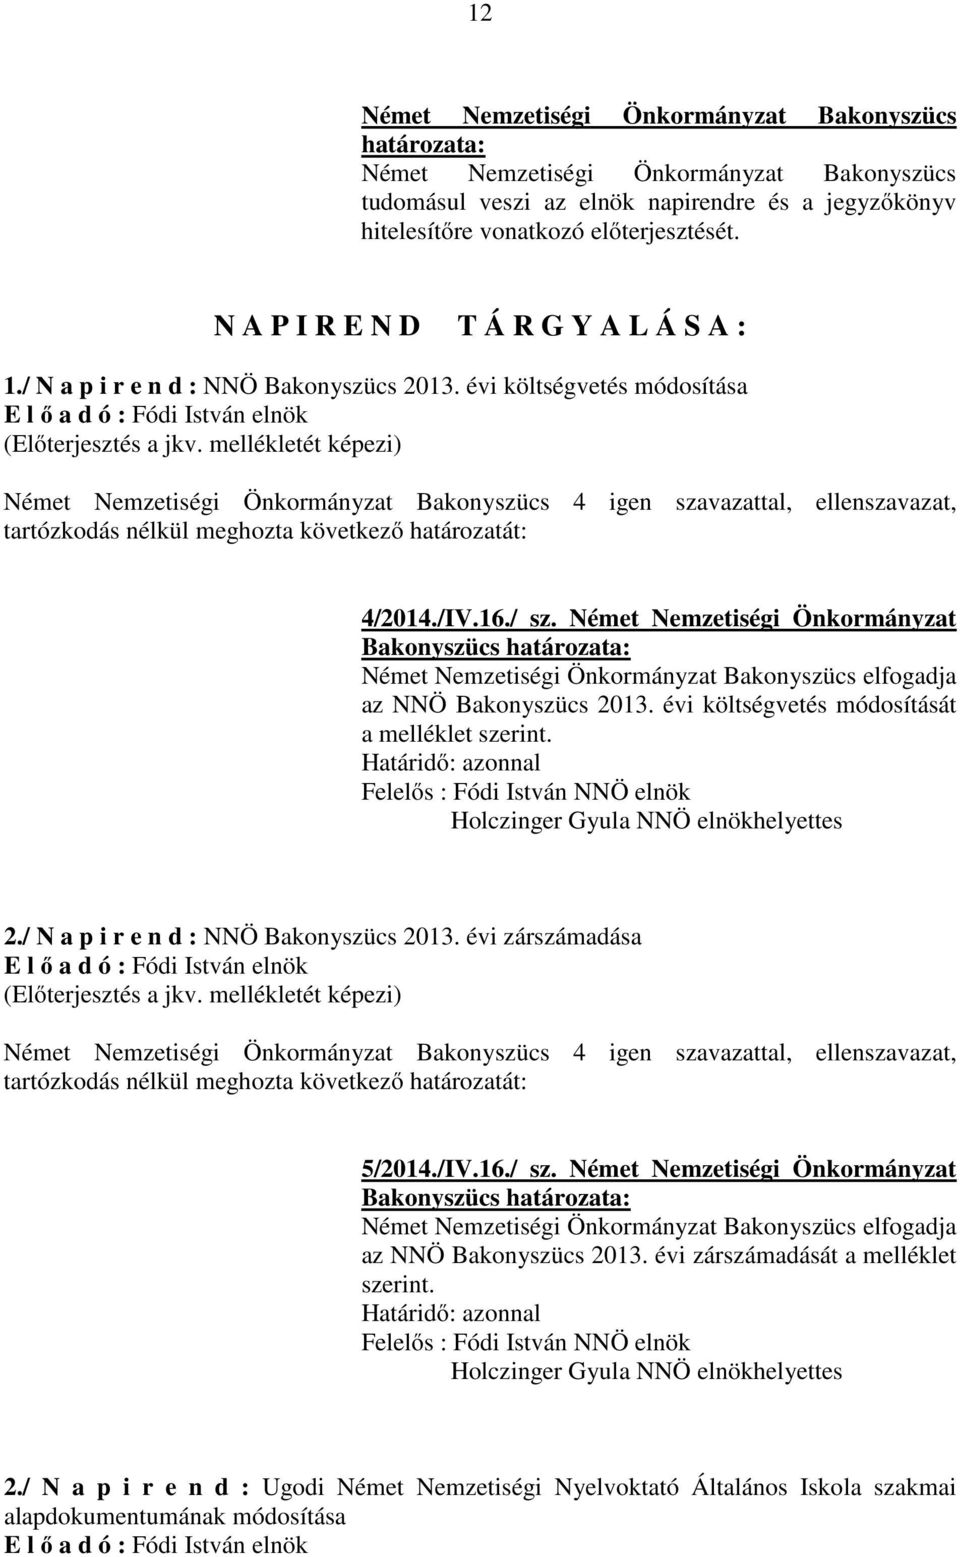 Német Nemzetiségi Önkormányzat elfogadja az NNÖ Bakonyszücs 2013. évi költségvetés módosítását a melléklet szerint. Holczinger Gyula NNÖ elnökhelyettes 2./ N a p i r e n d : NNÖ Bakonyszücs 2013.